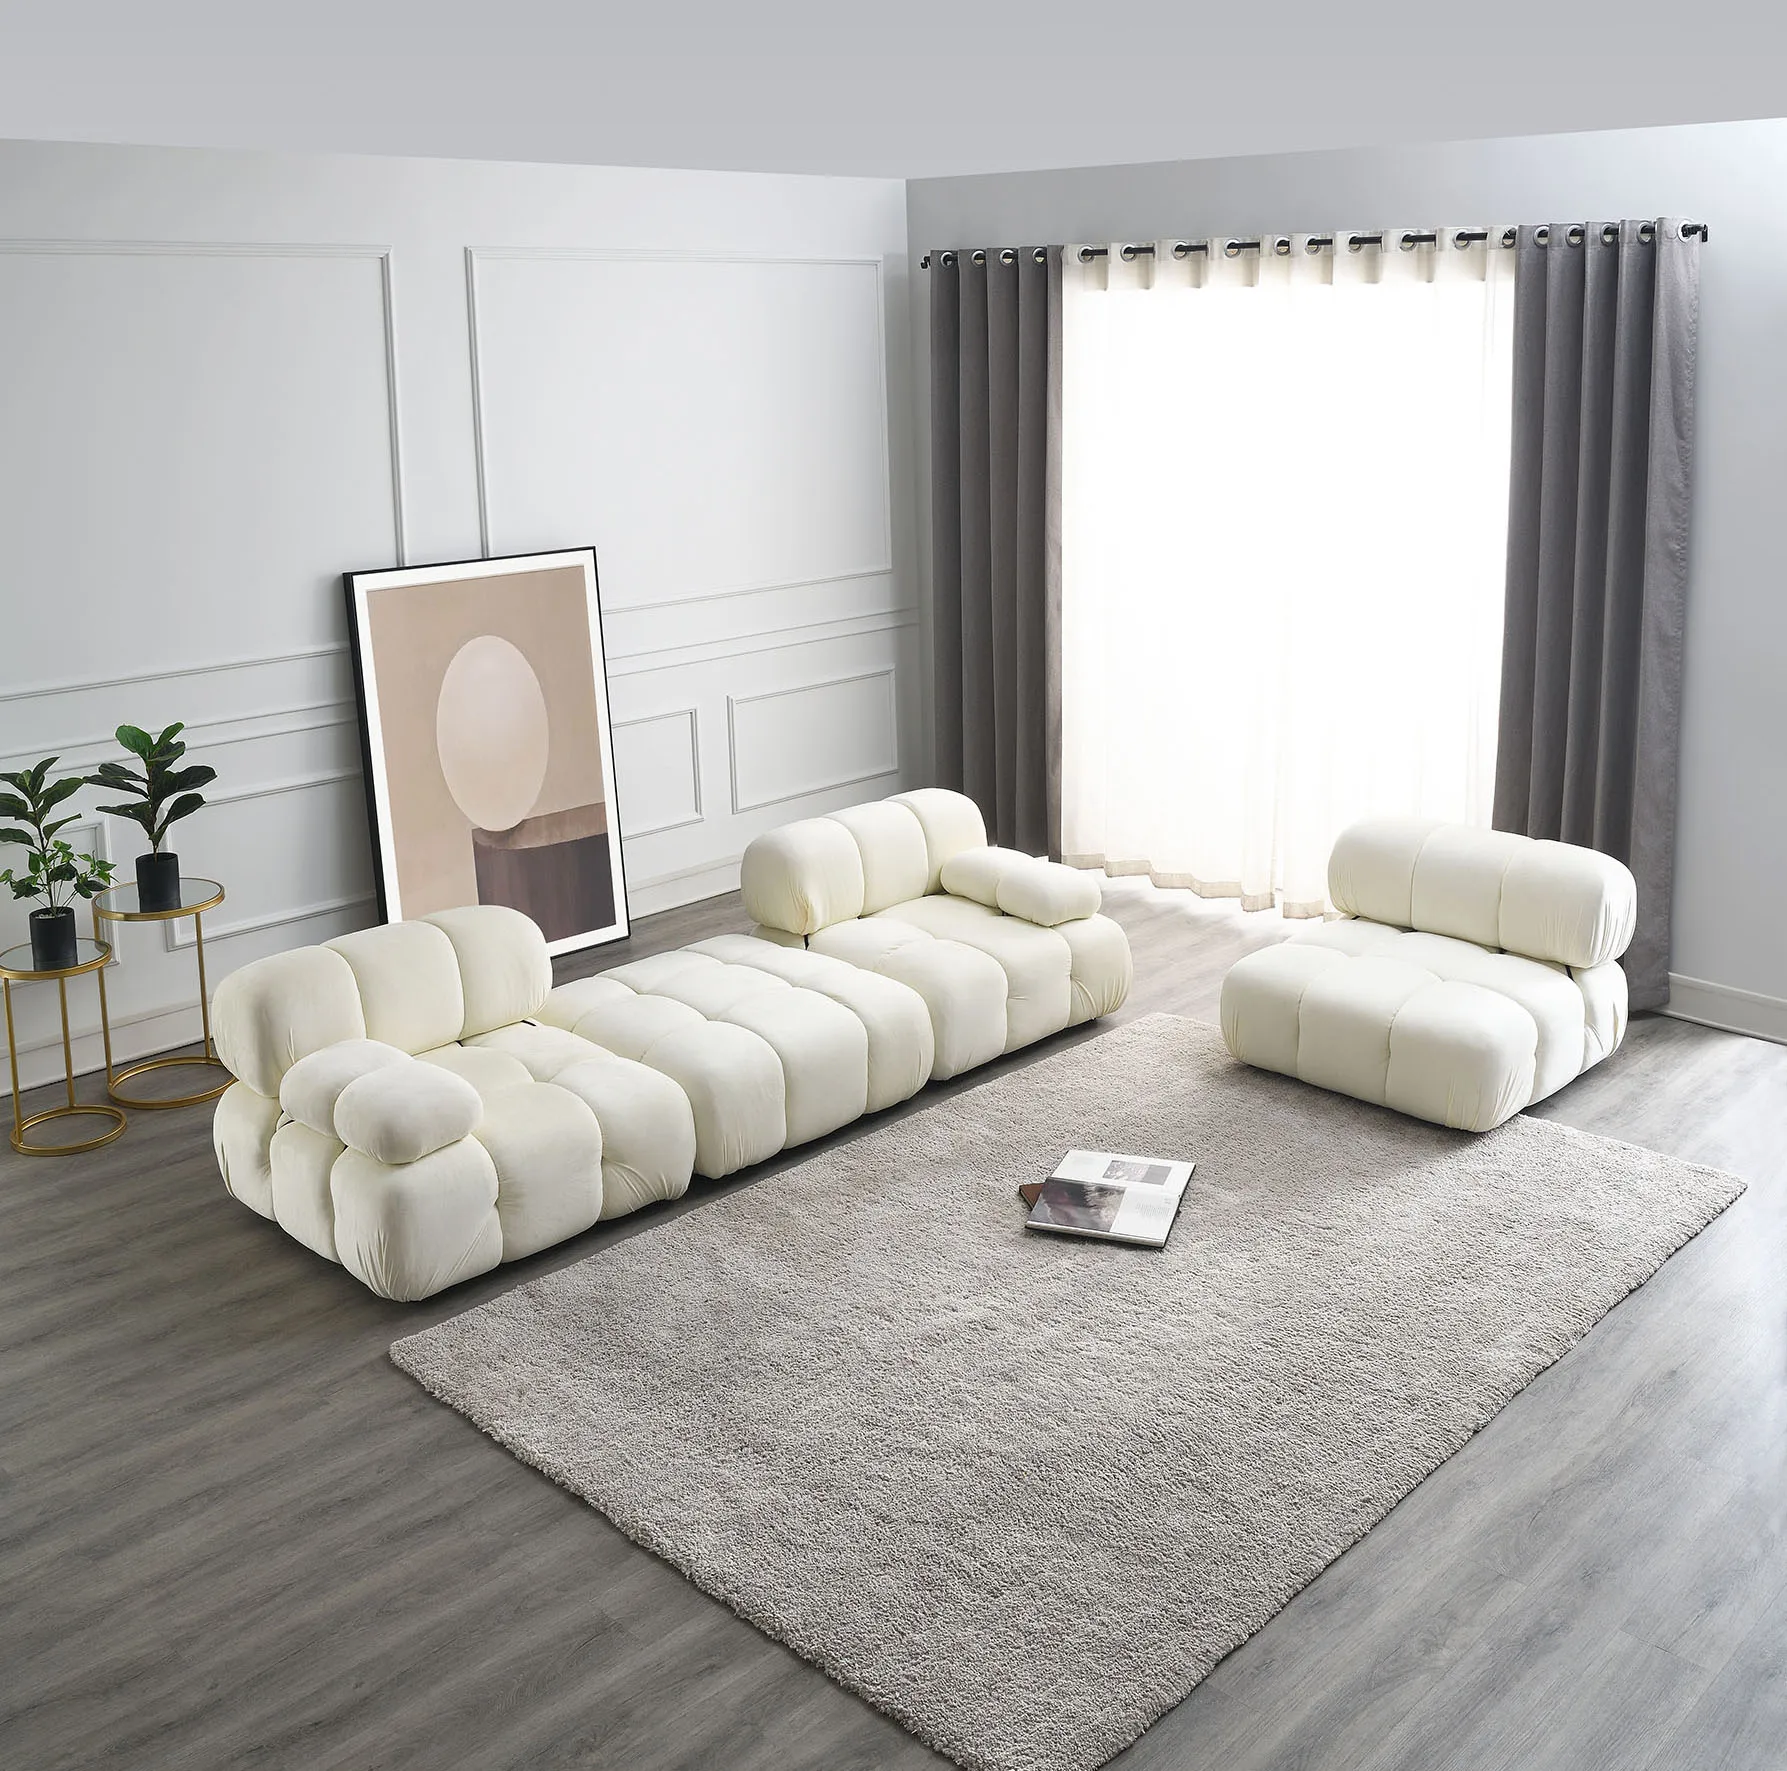 Горячая Распродажа Настраиваемой губки высокой плотности, Многомодульного Секционного дивана, дивана для отдыха в гостиной, лобби, дивана с откидной спинкой